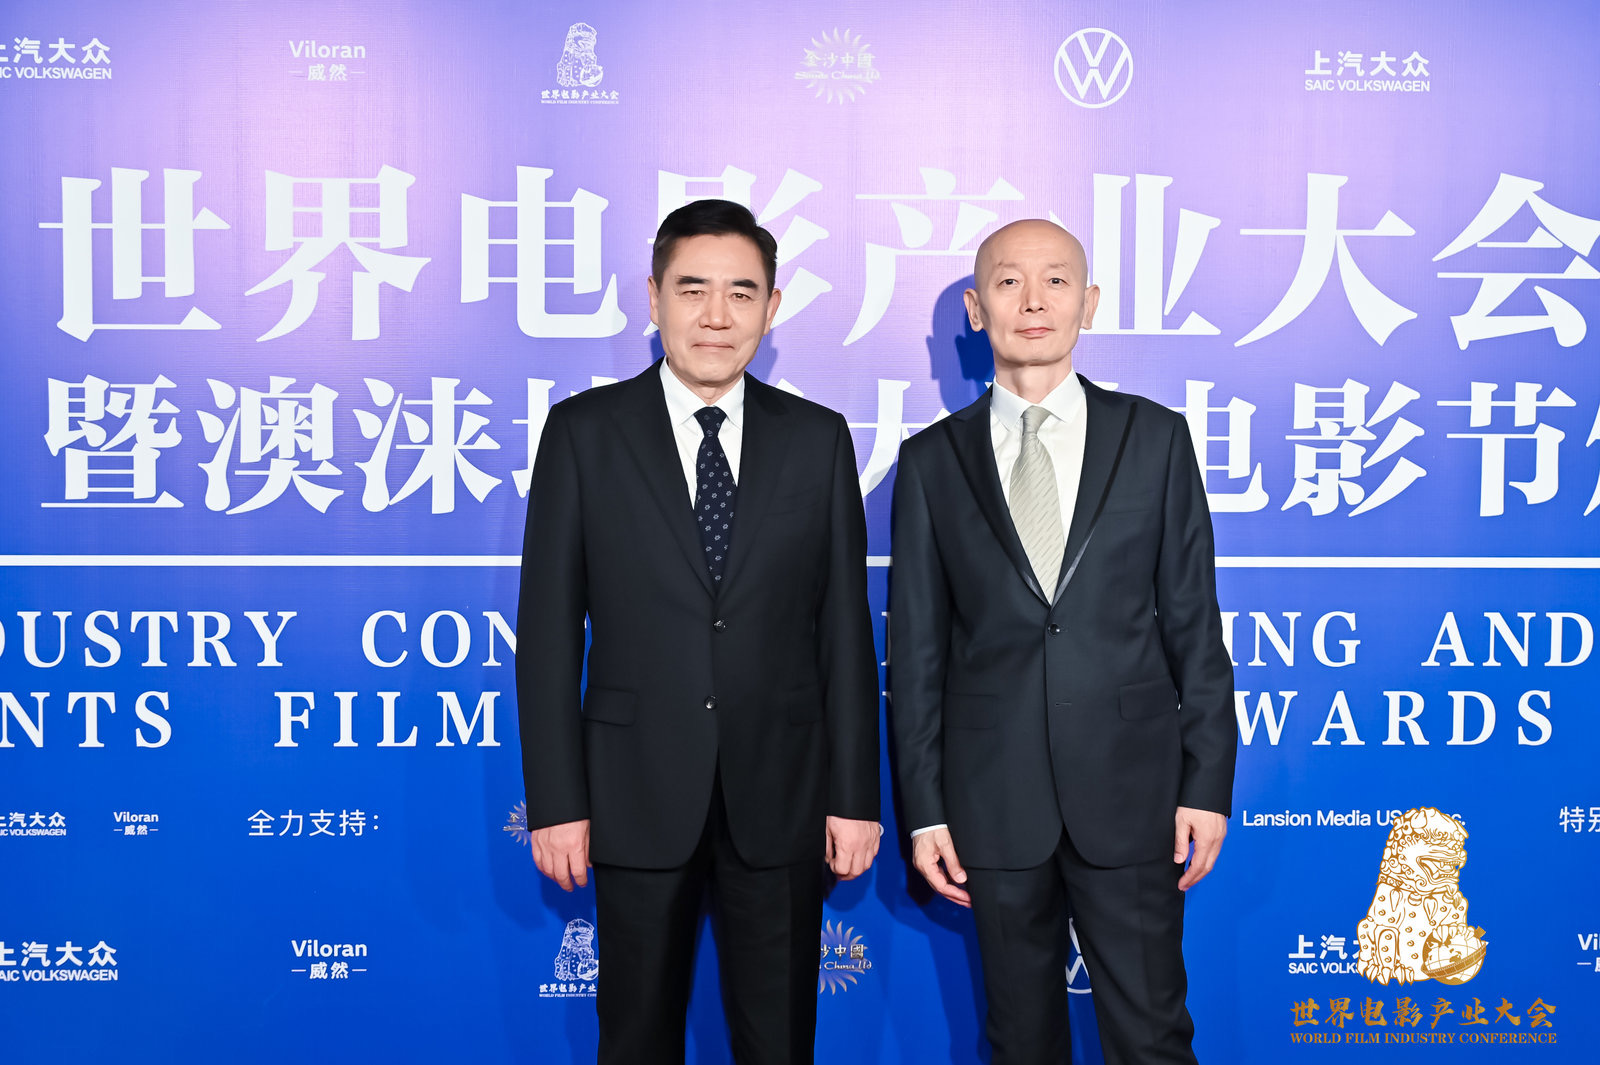 前美国奥斯卡主席比尔·麦克尼柯出席上汽大众威然世界电影产业大会-中国南方教育网